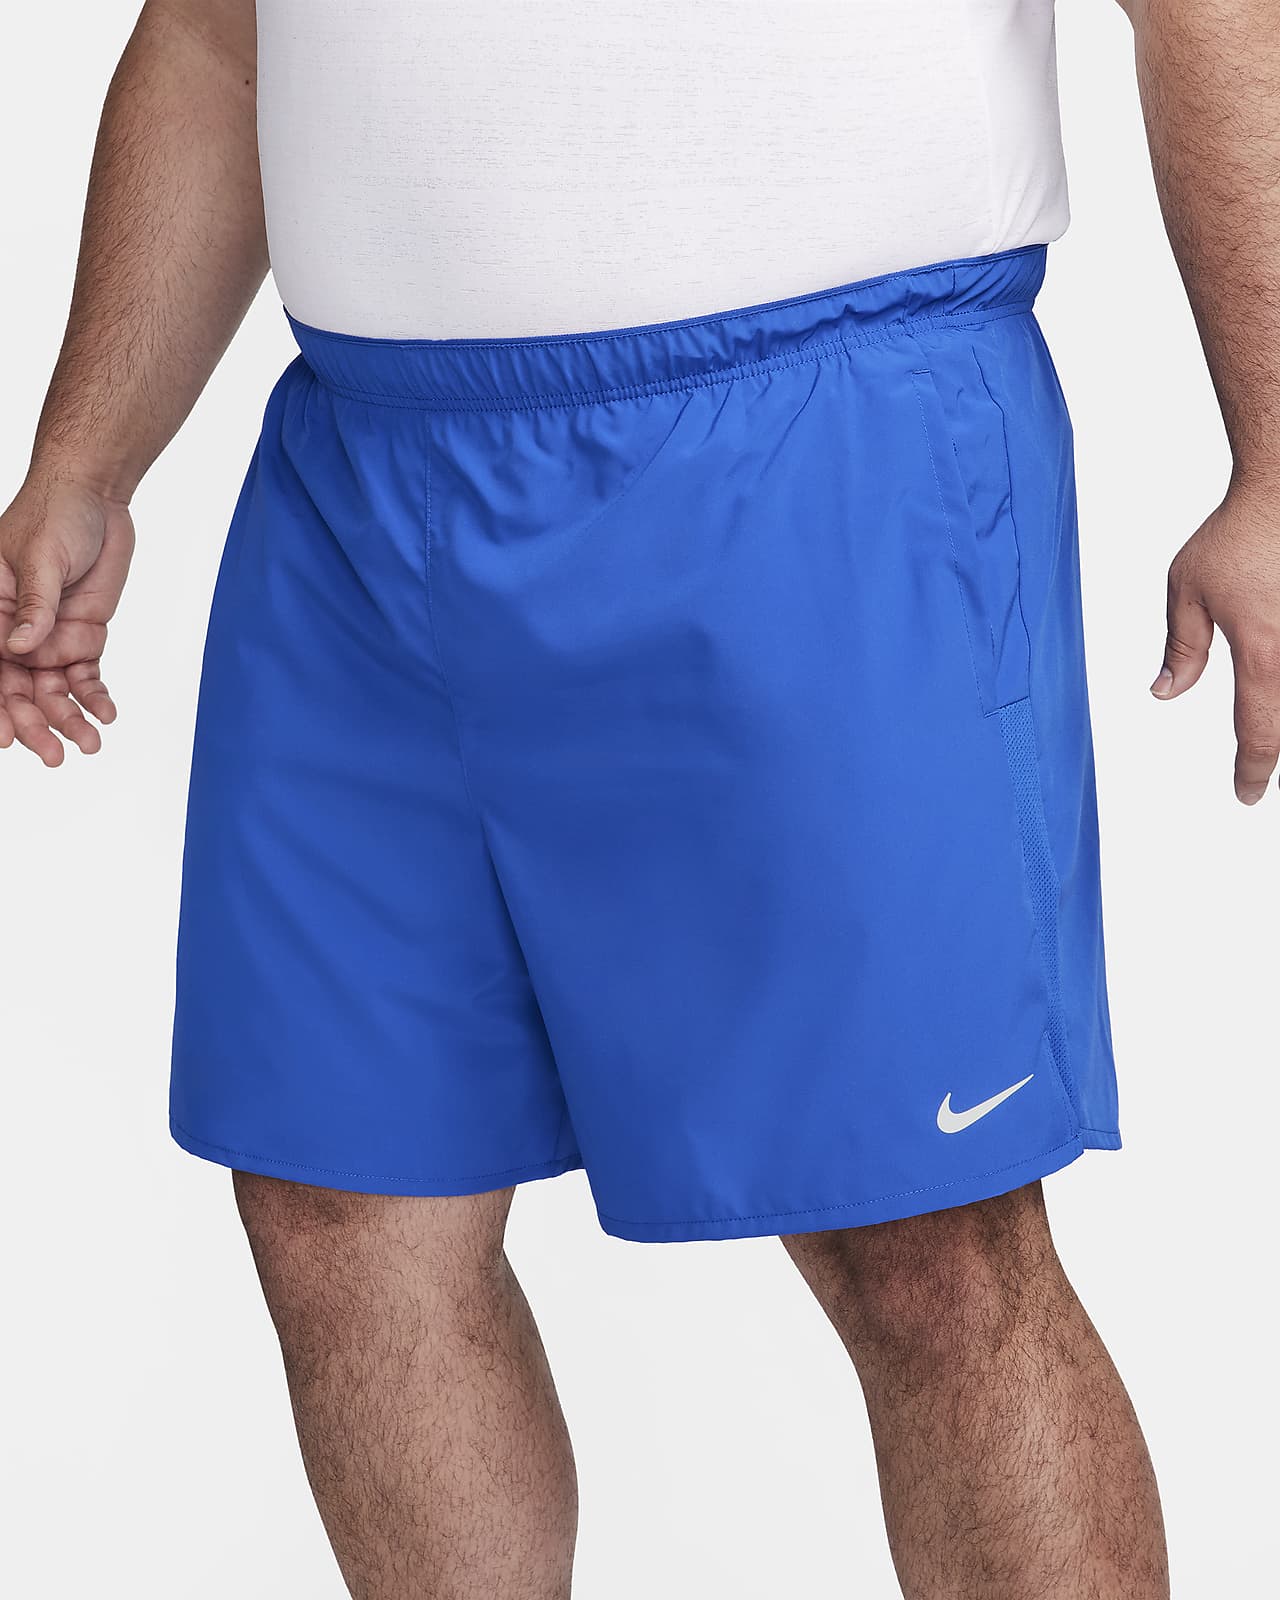 Mens Running Shorts, 7-Inch, 2-in-1, Long